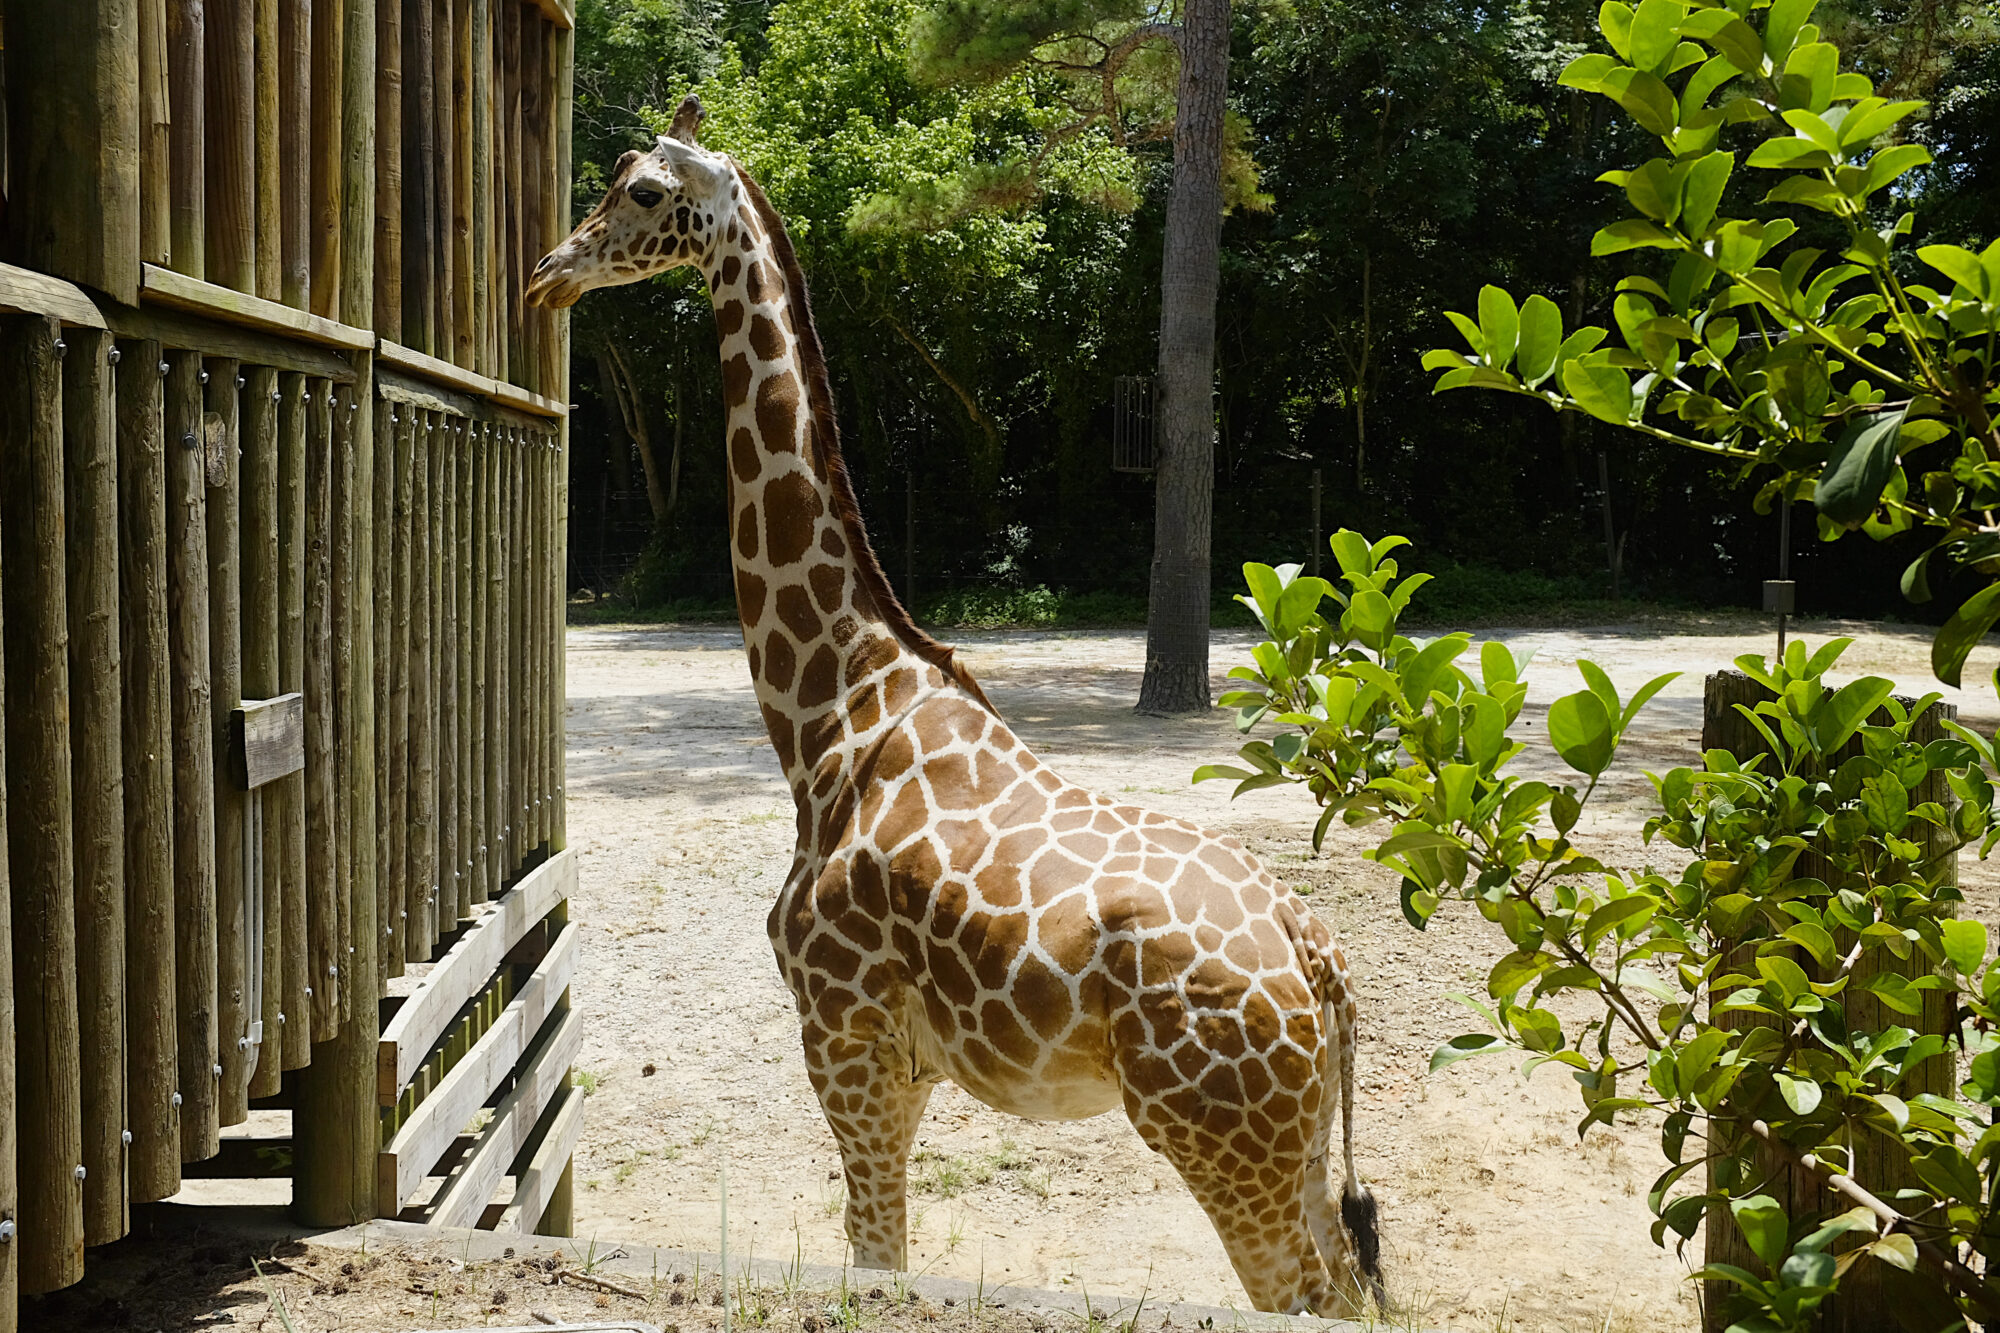 A giraffe at the Riverbanks Zoo & Garden